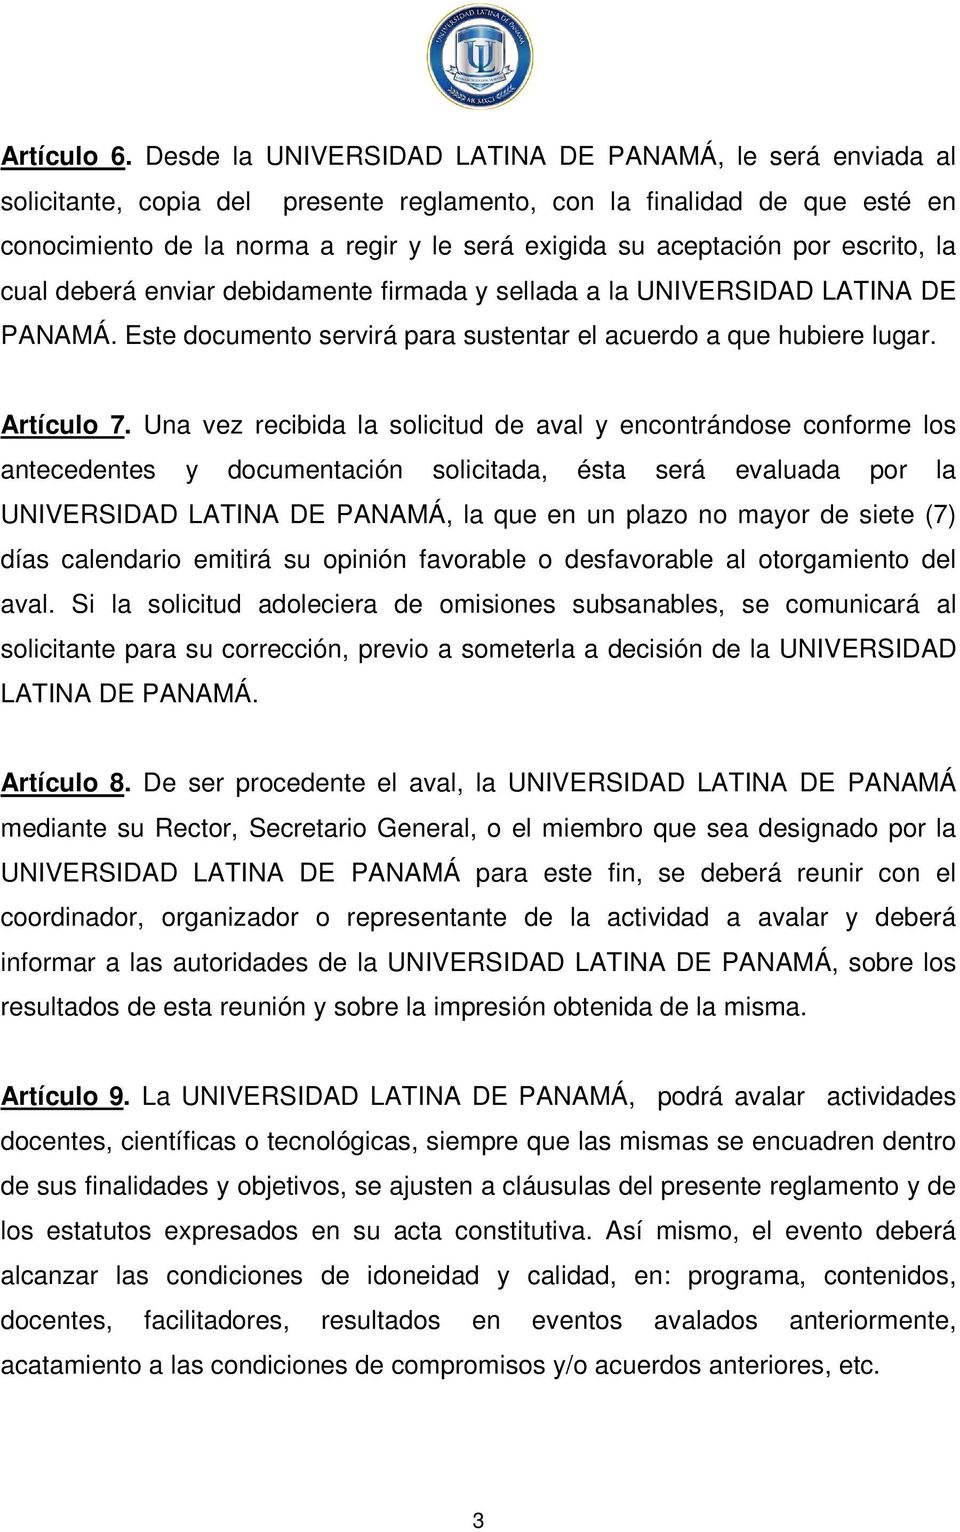 por escrito, la cual deberá enviar debidamente firmada y sellada a la UNIVERSIDAD LATINA DE PANAMÁ. Este documento servirá para sustentar el acuerdo a que hubiere lugar. Artículo 7.